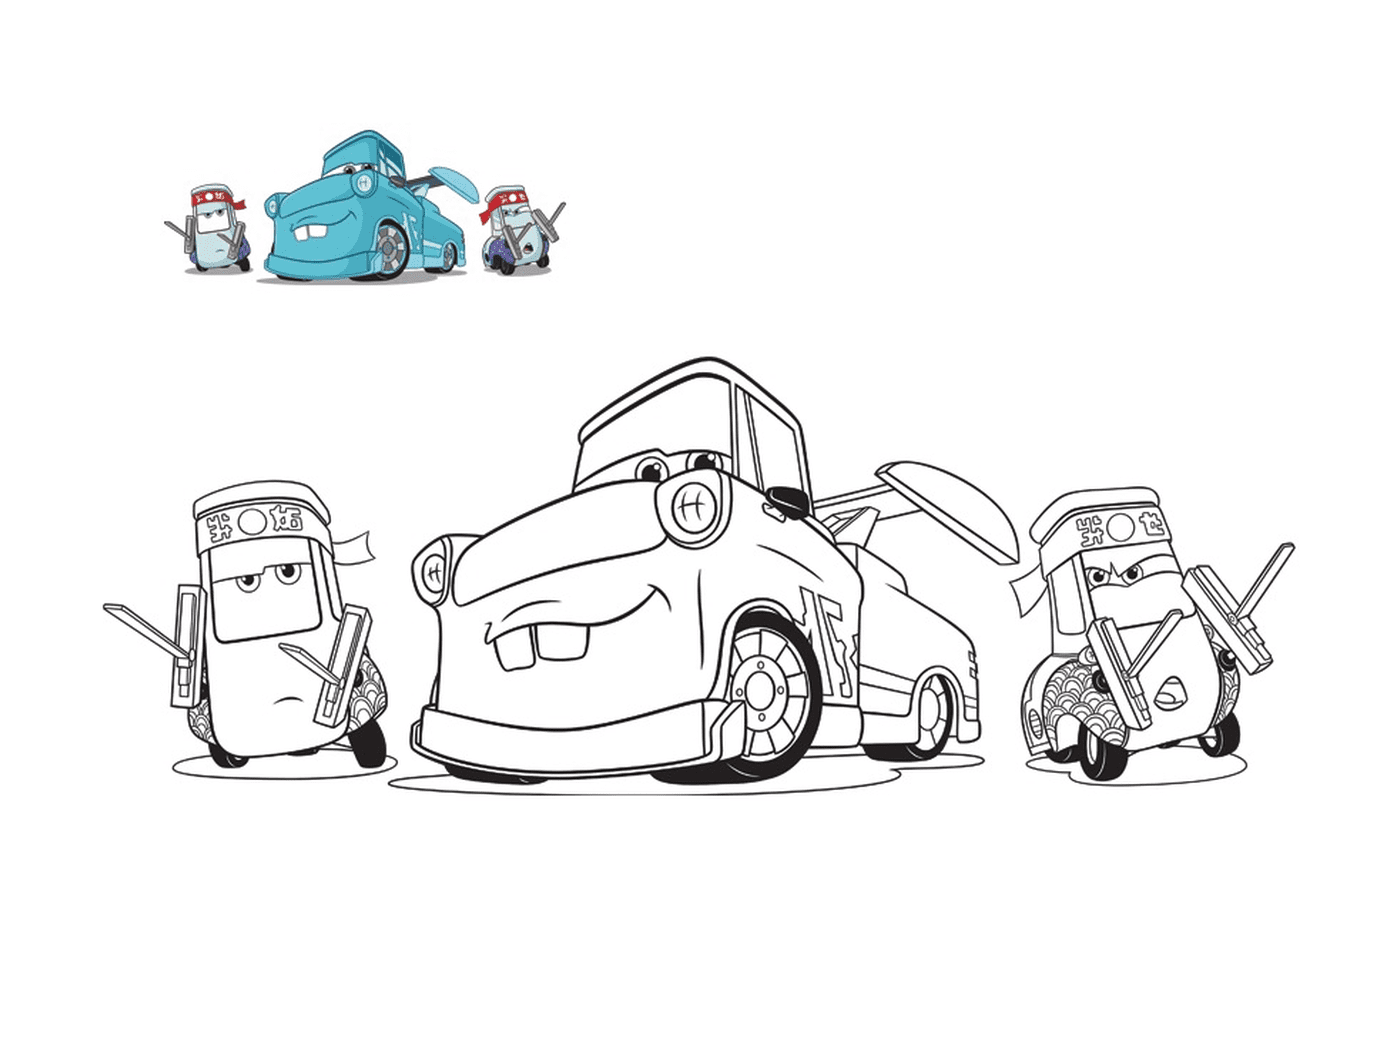  Машины 3, Гвидо и его друзья, механический буксир, линия машины с машиной на полу 